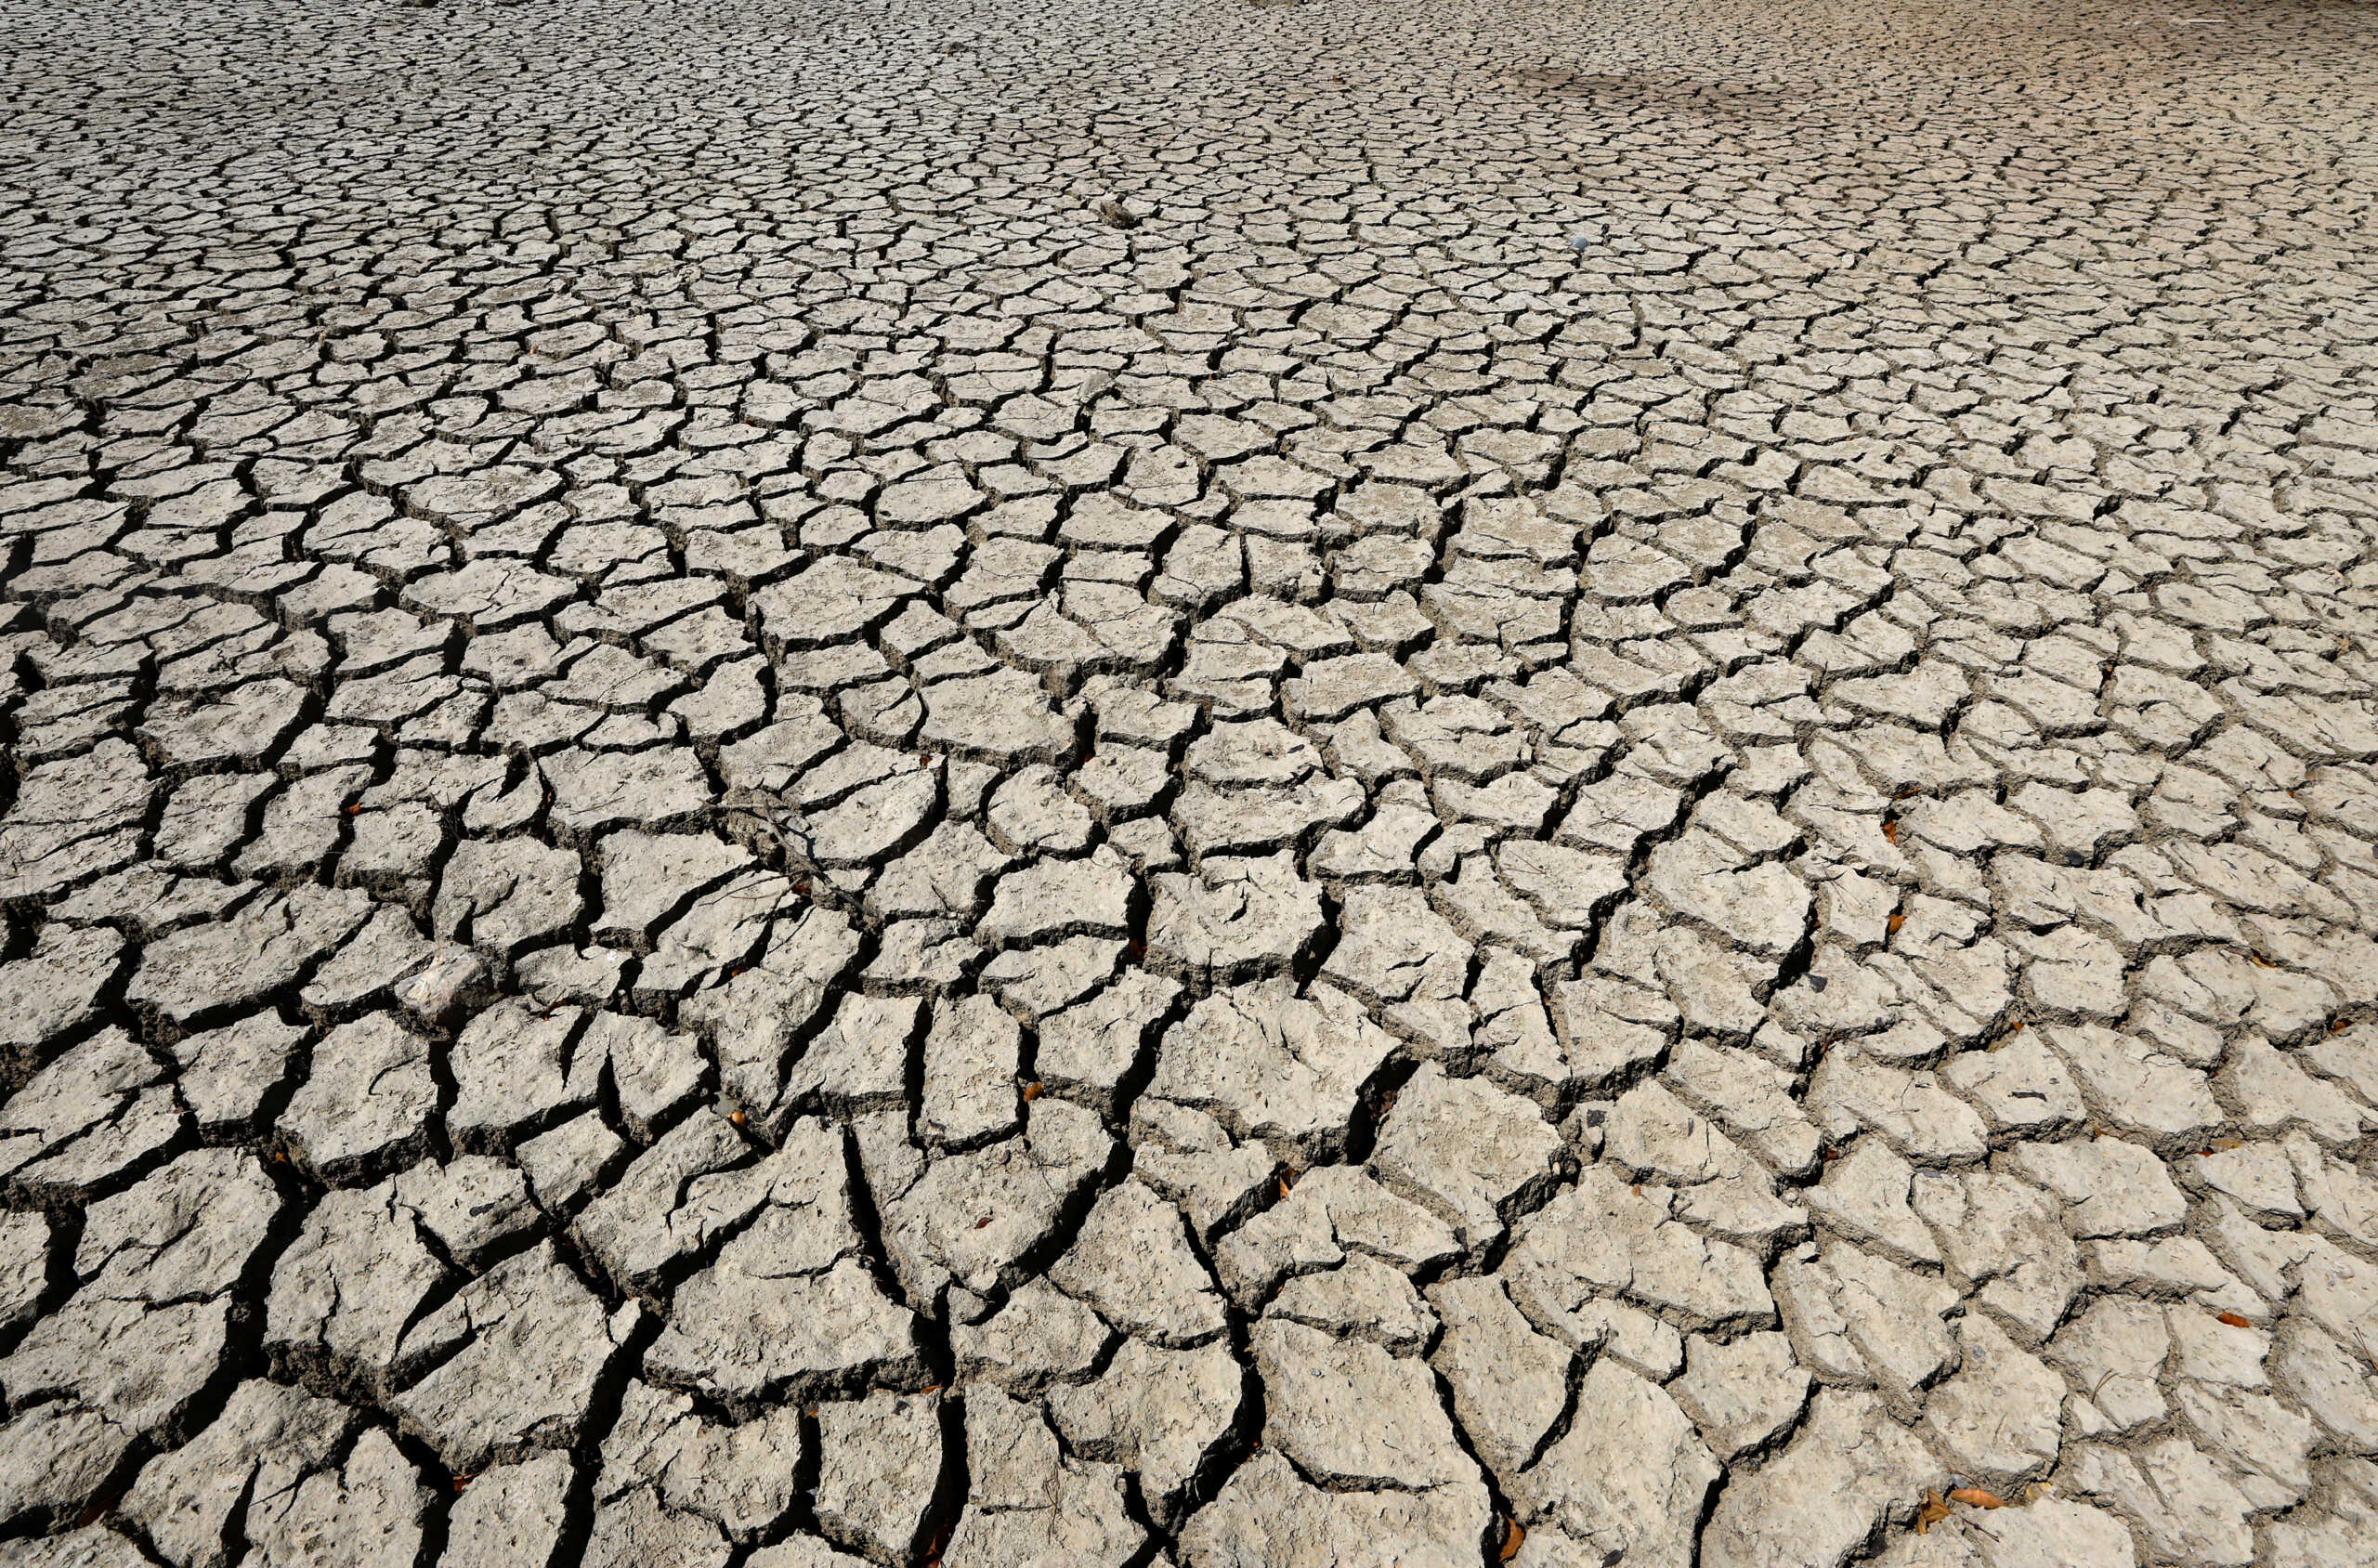 Ξηρασία: Μειώνεται η παροχή νερού στις δυτικές ΗΠΑ και στο Μεξικό